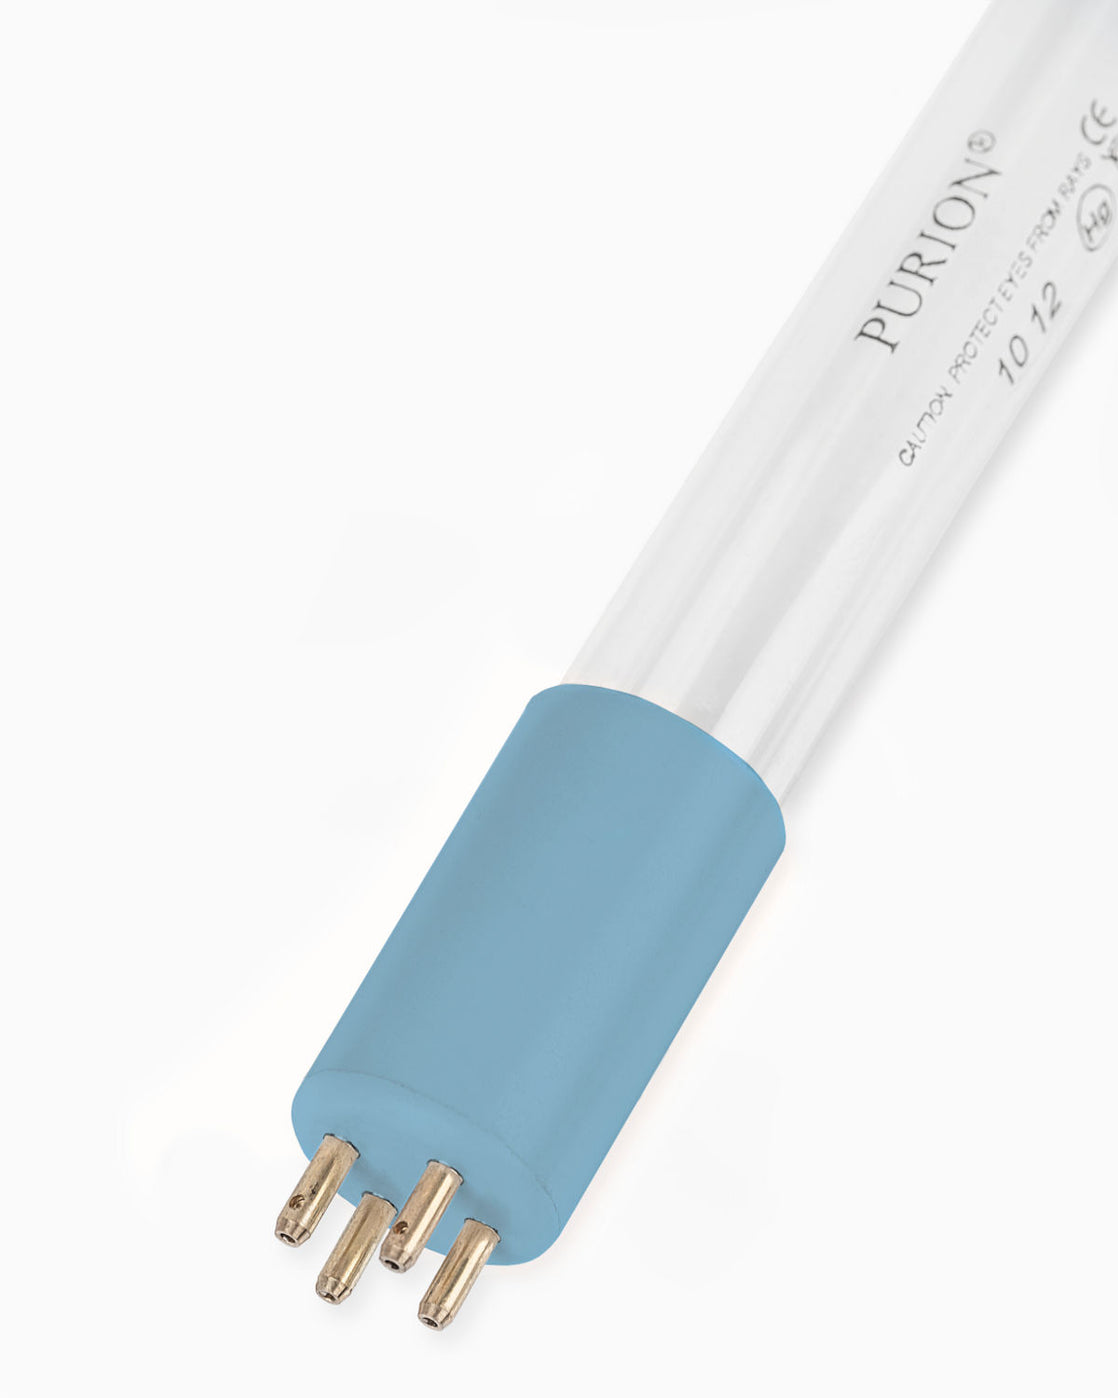 Eine blaue Lichtröhre auf weißem Hintergrund, die die UV-C-Desinfektion für Salzwasserpools der PURION GmbH PURION 2501 Dual PVC-U Basic ergänzt.